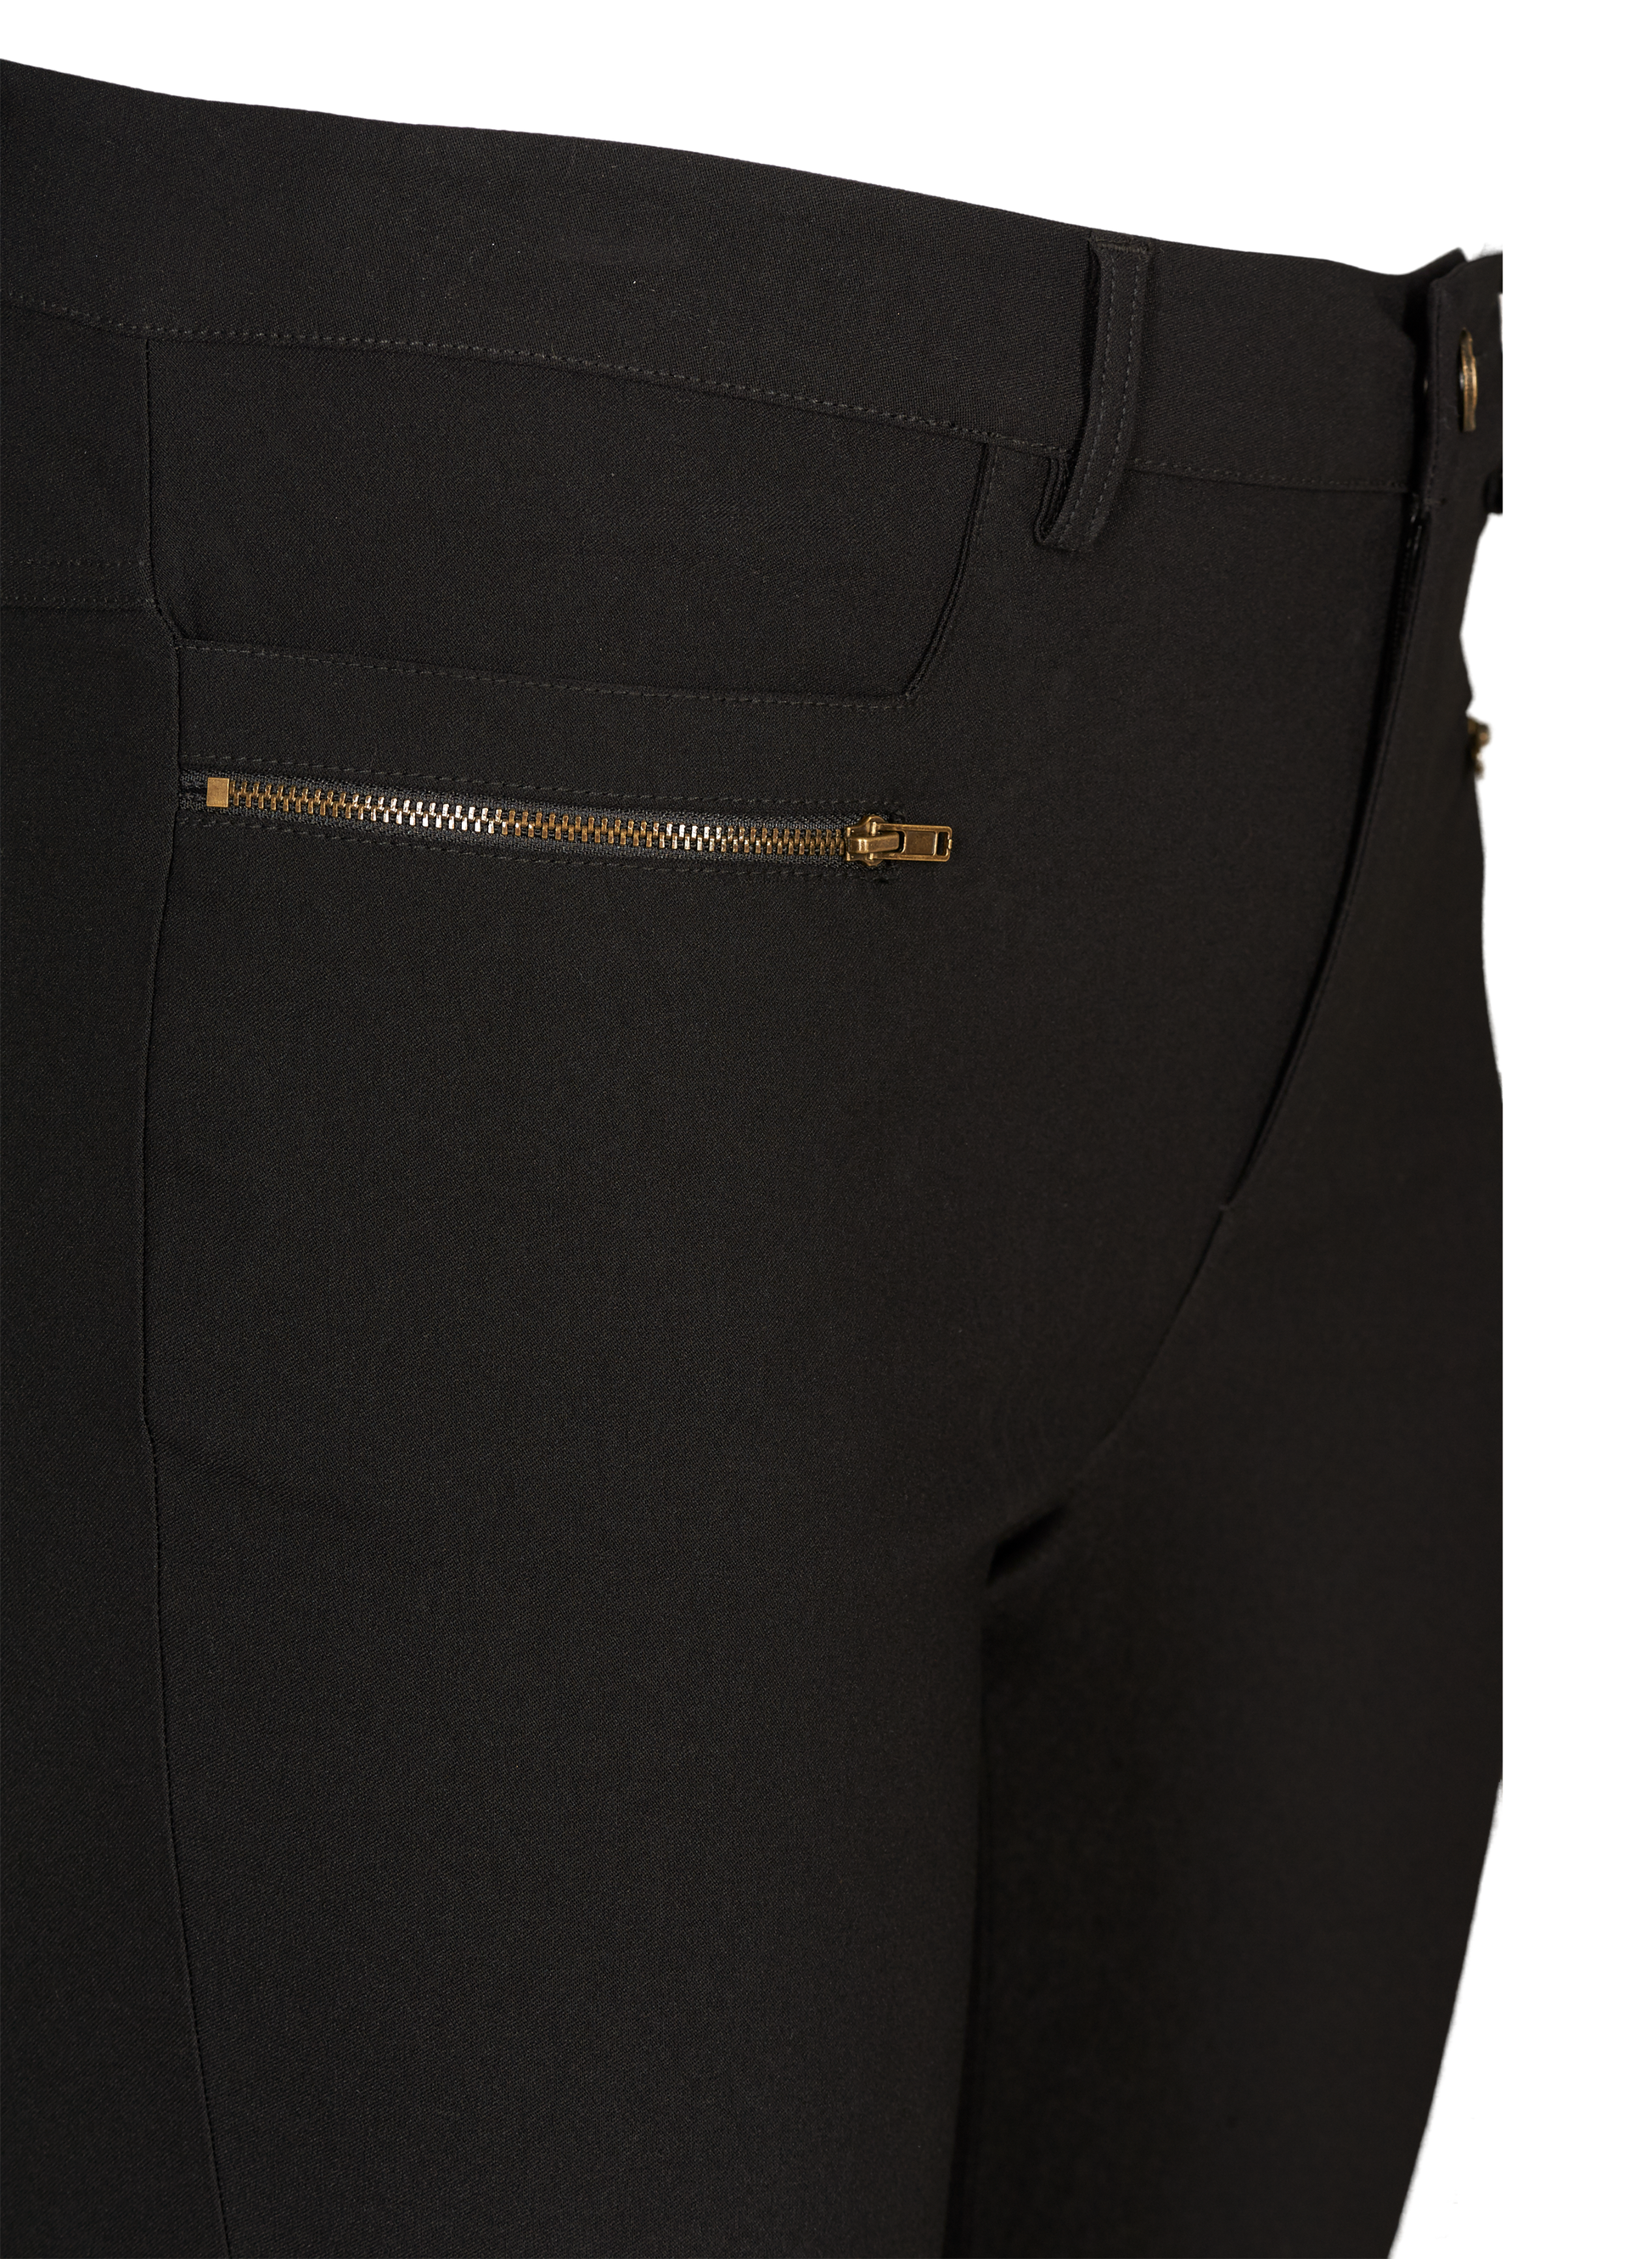 Bukser med lynlåsdetaljer fra Zizzi-Pluspige